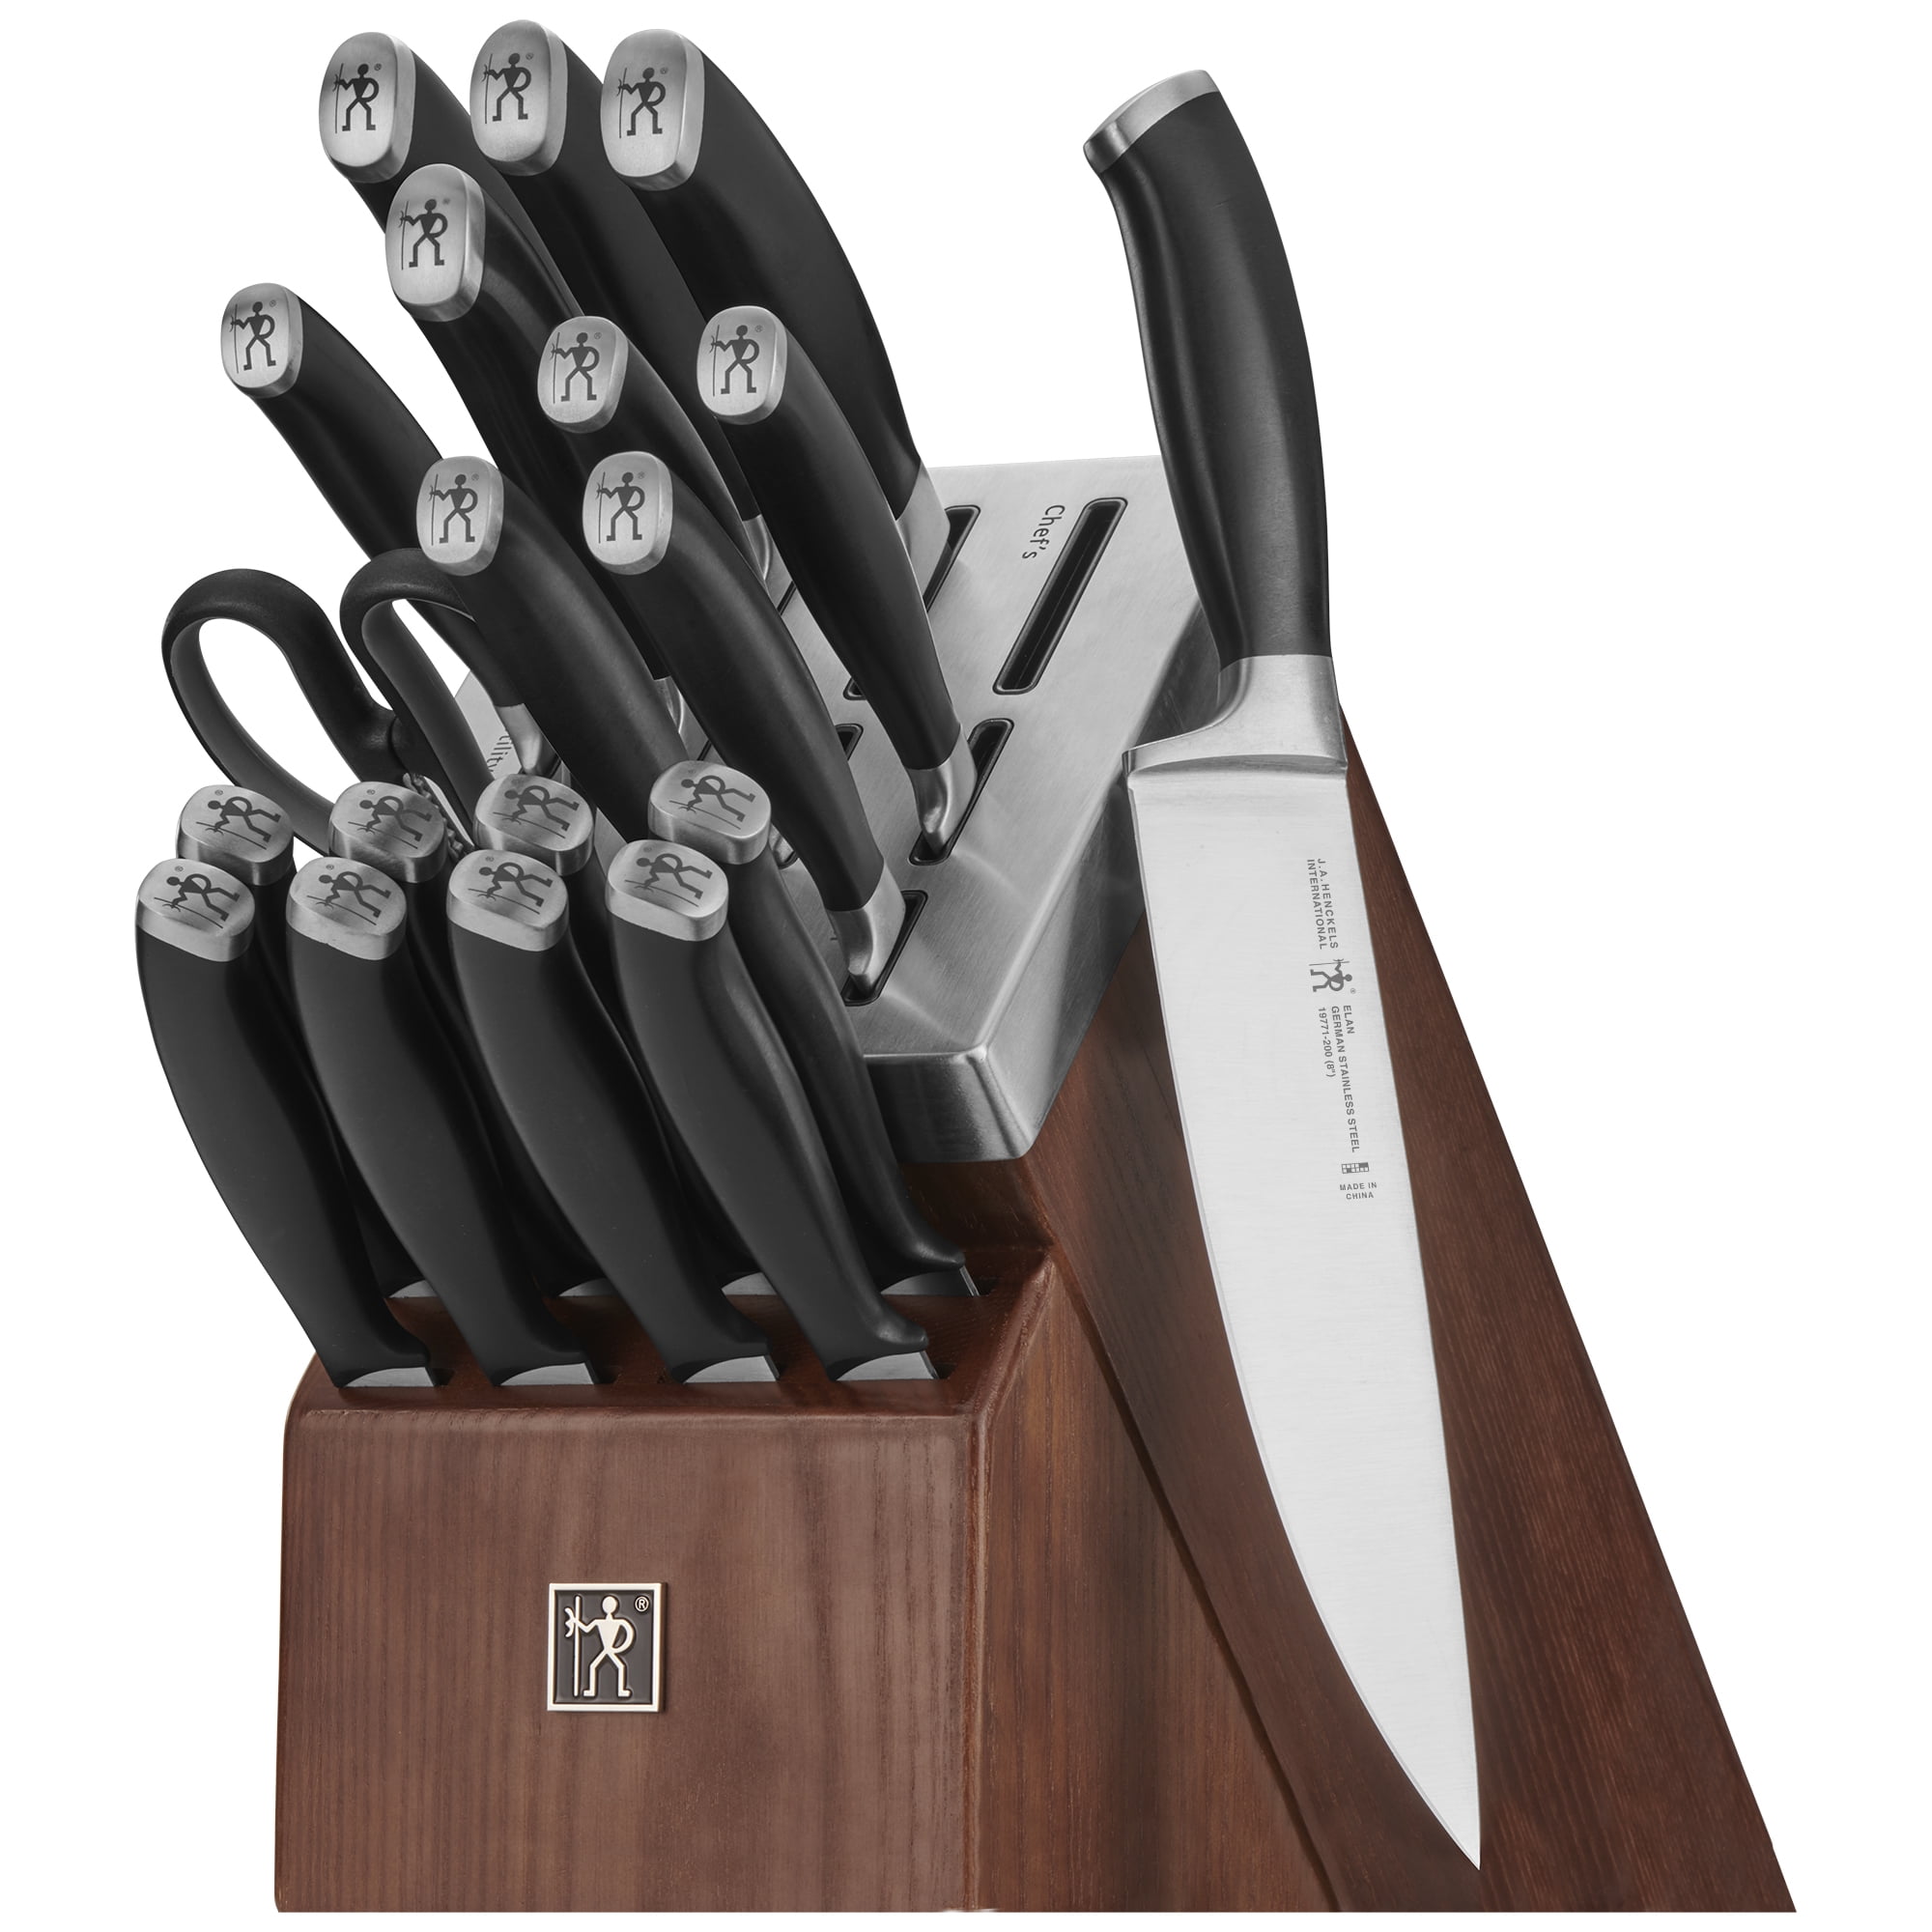 Henckels Elan 20 Piece Knife Set, Review & Cut Test